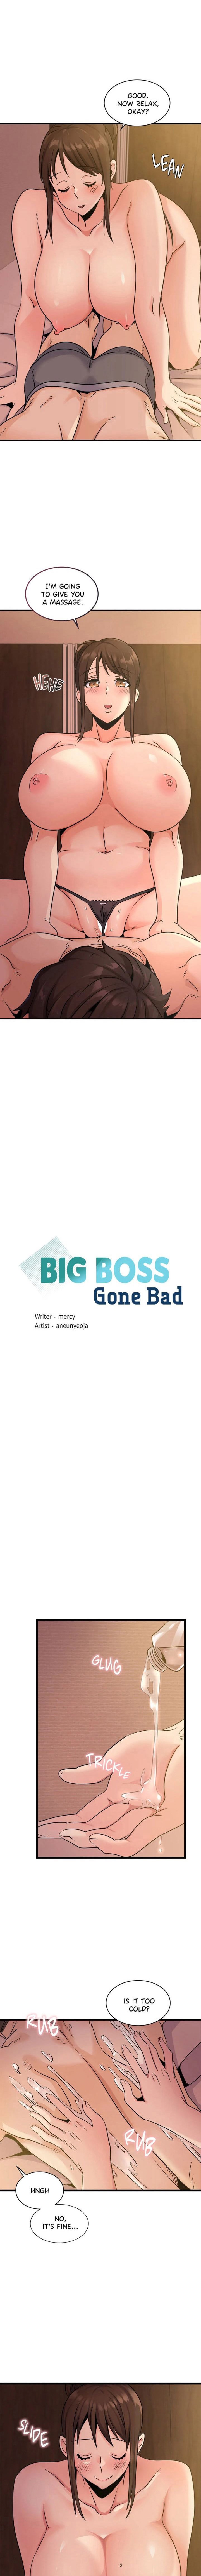 big-boss-gone-bad-chap-26-0